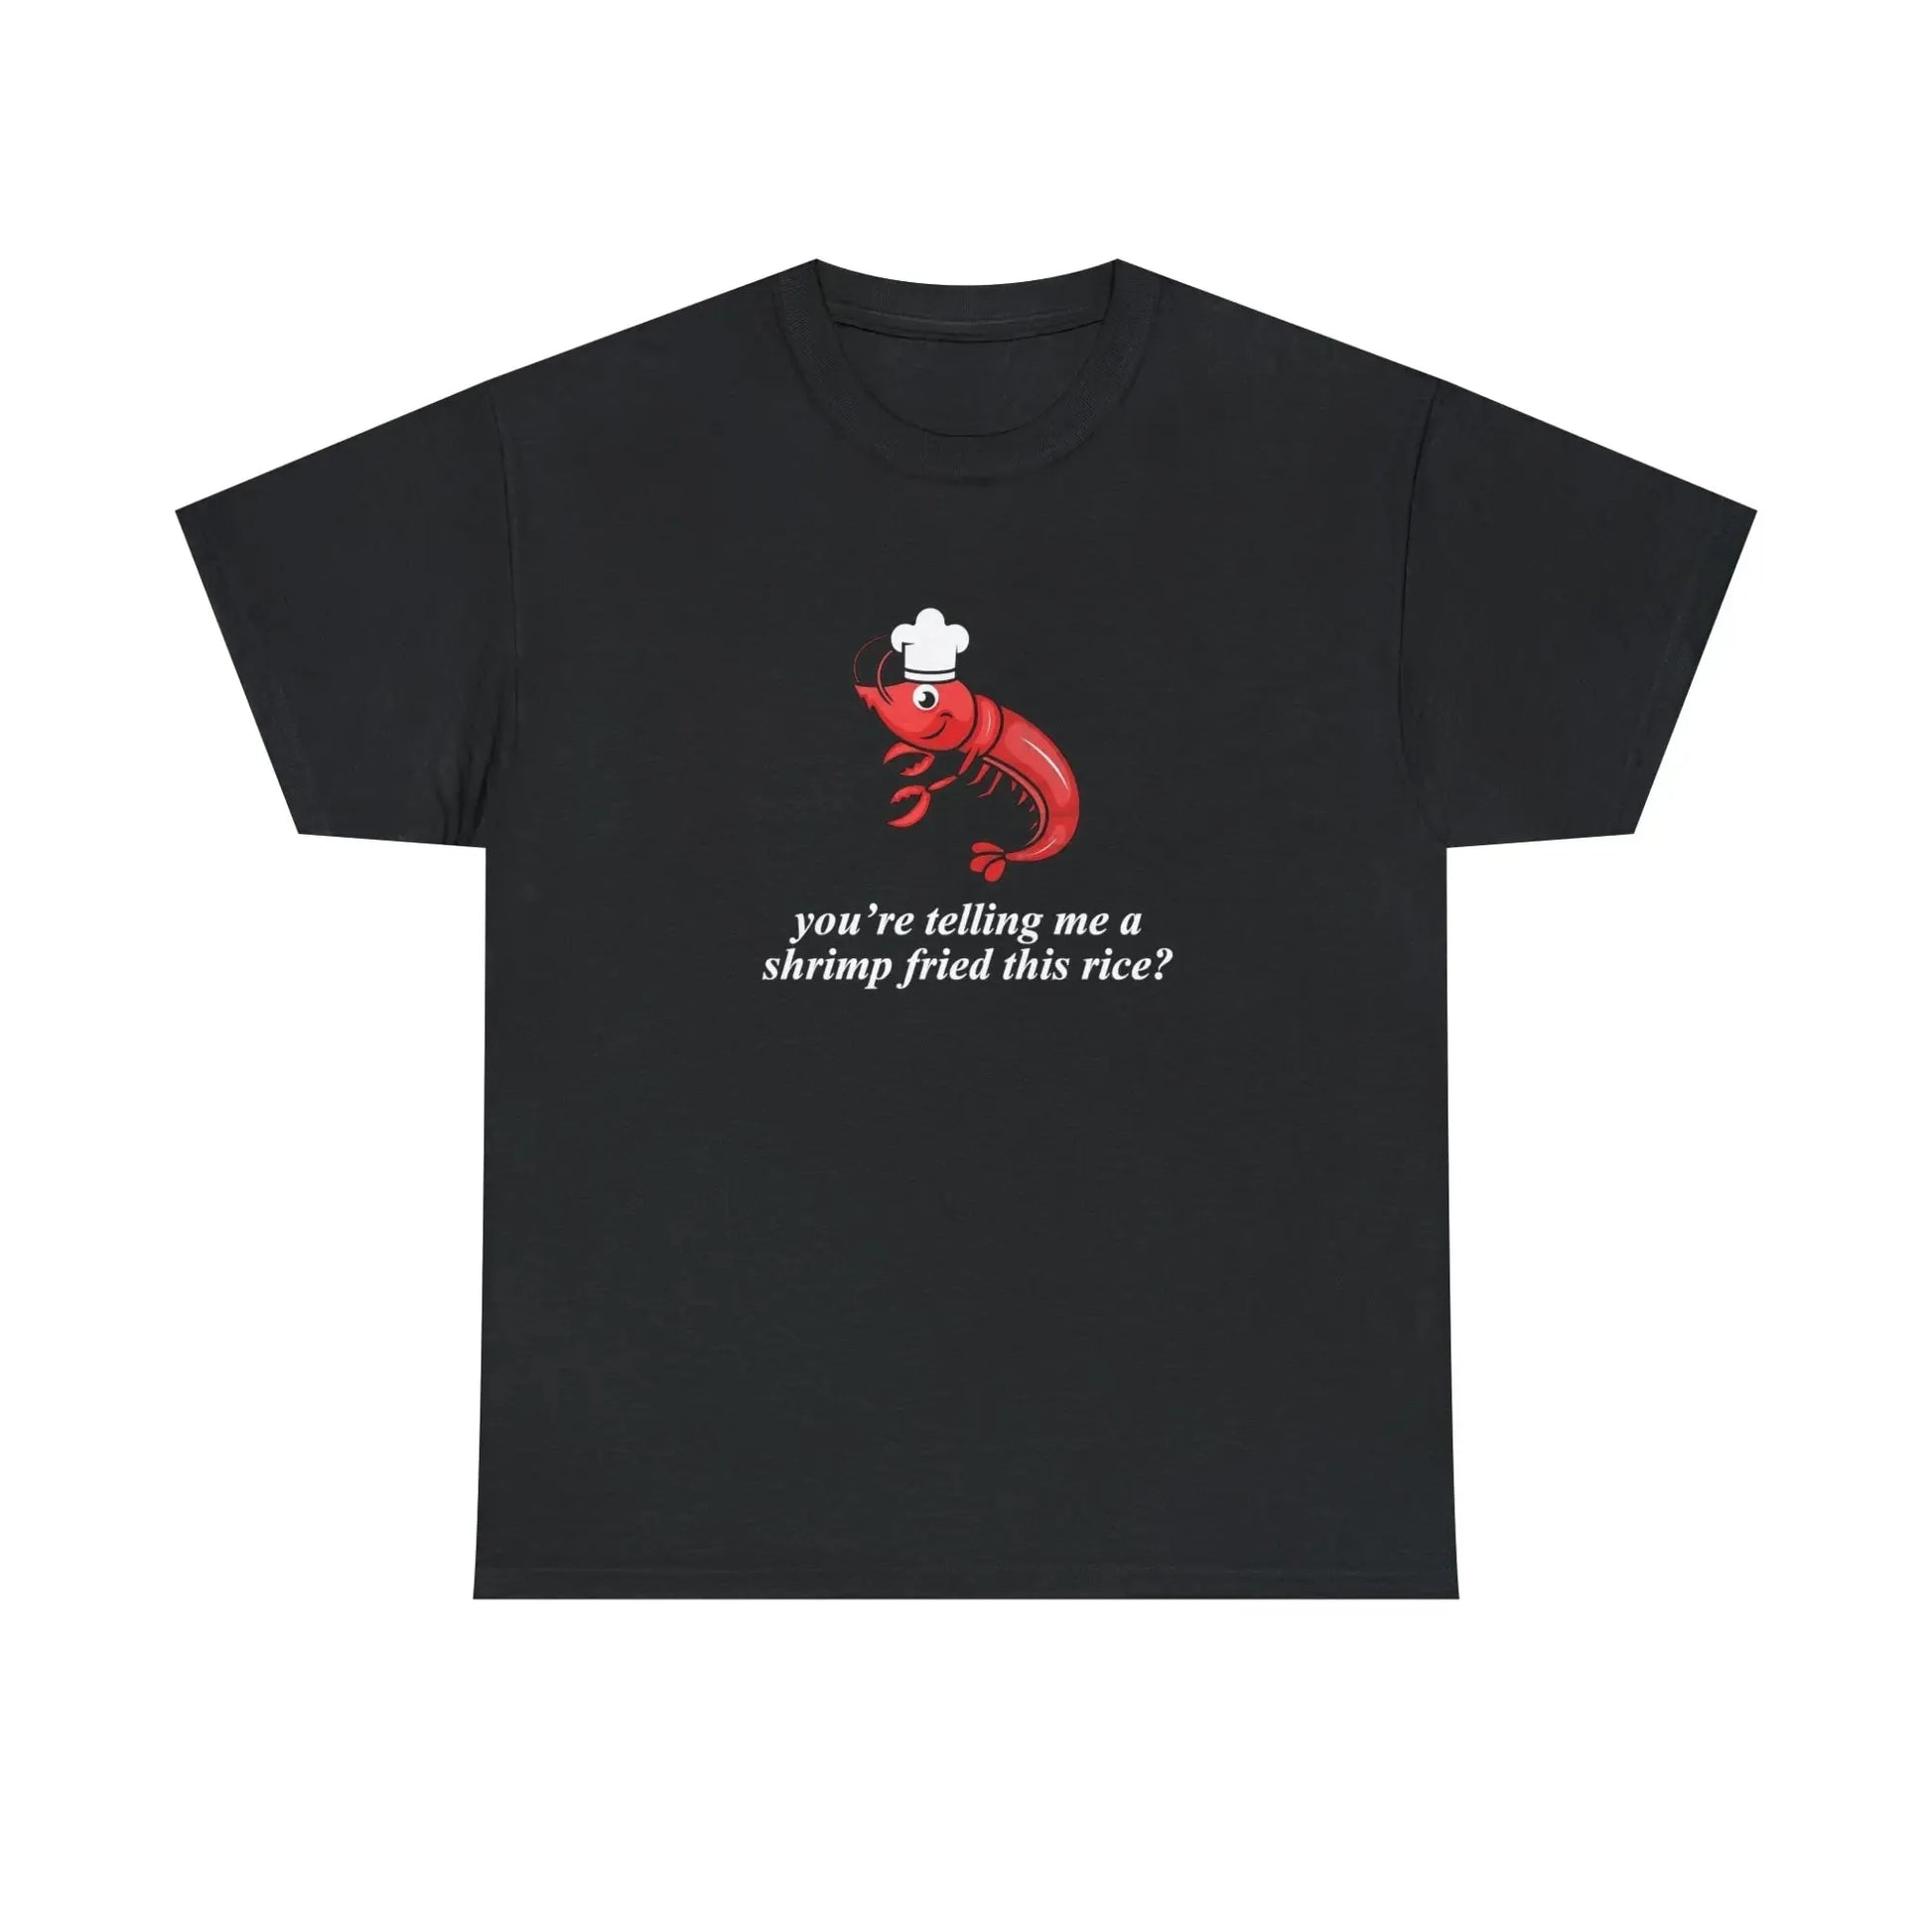 A Shrimp Fried This Rice T-Shirt - Failure International failureinternational.com store brand tiktok instagram